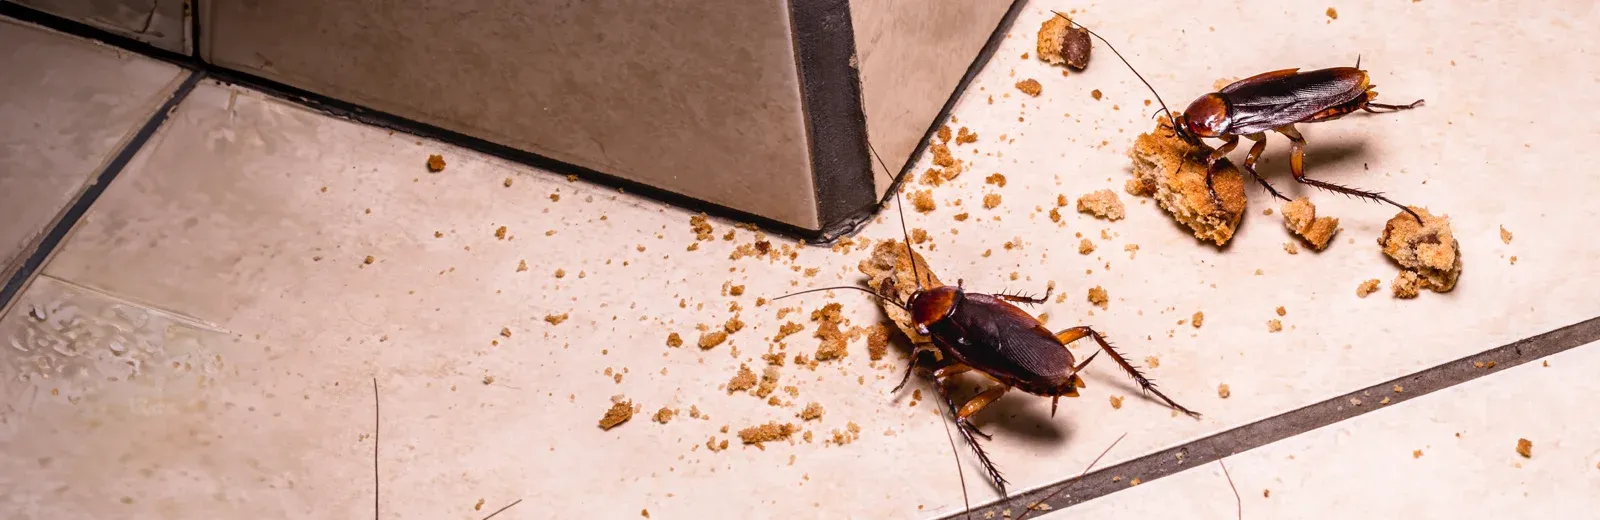 roaches in kitchen